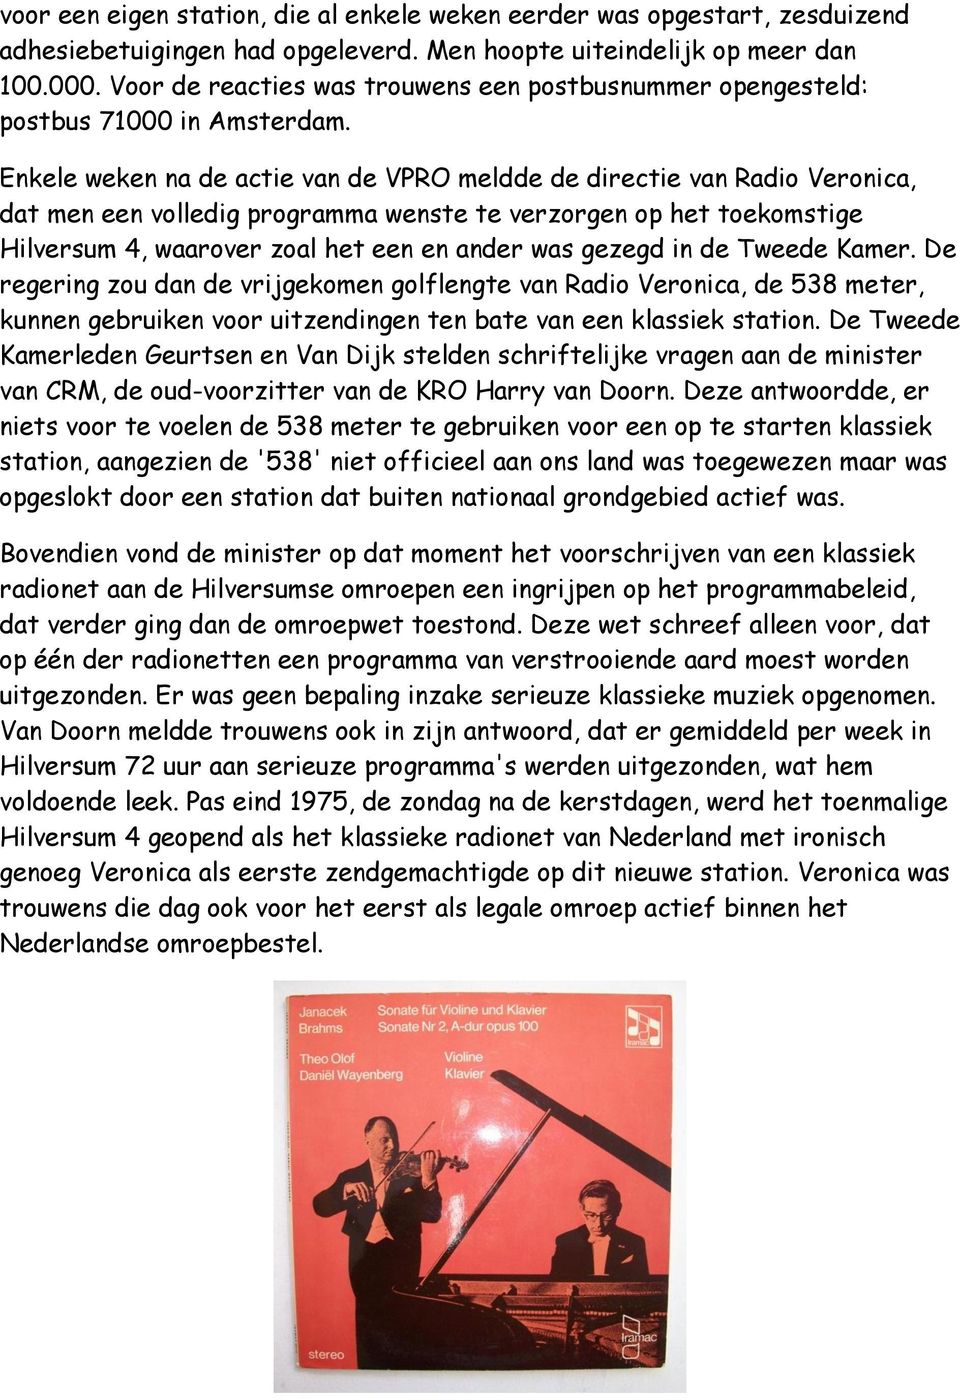 Enkele weken na de actie van de VPRO meldde de directie van Radio Veronica, dat men een volledig programma wenste te verzorgen op het toekomstige Hilversum 4, waarover zoal het een en ander was